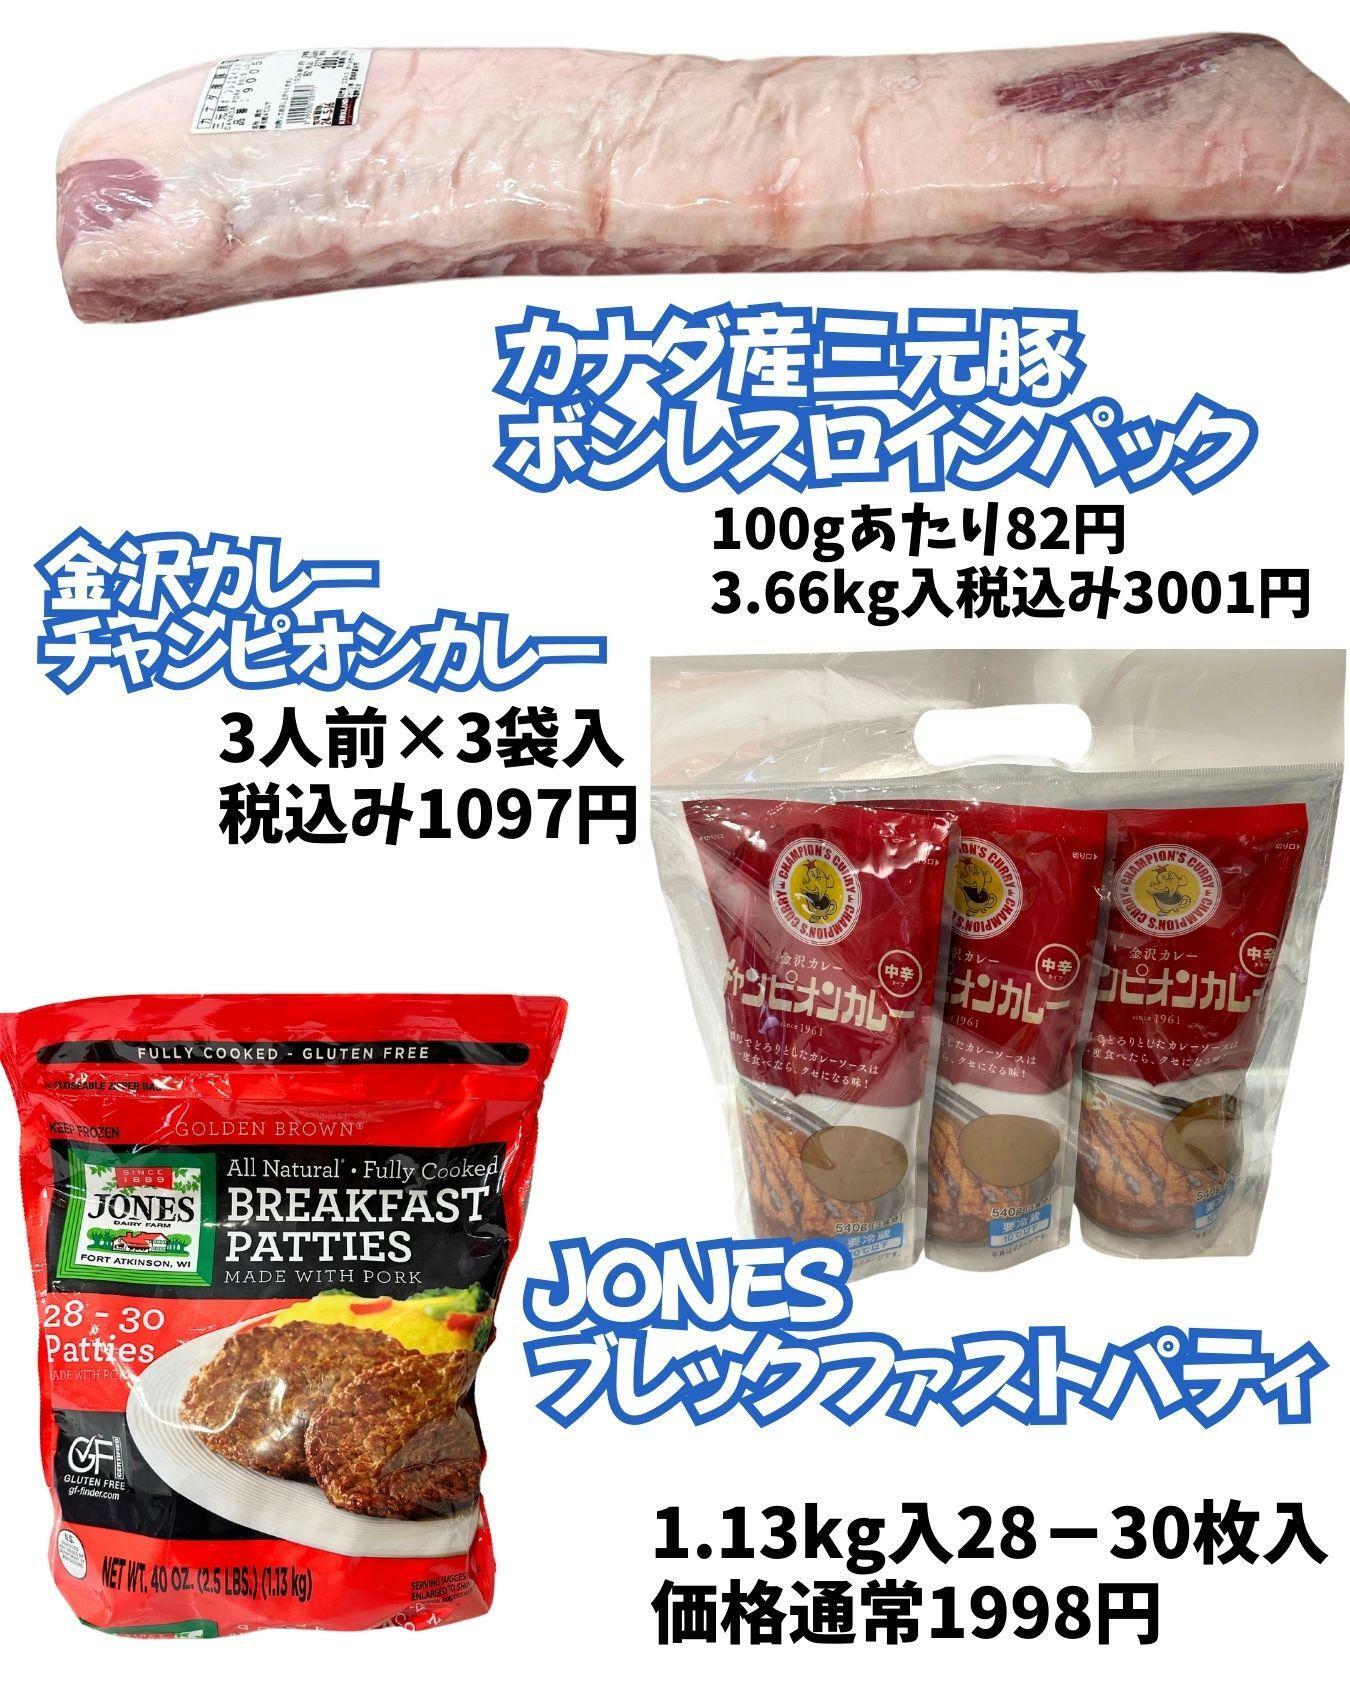 【コストコ】三元豚、チャンピオンカレー、JONESブレックファストパティ